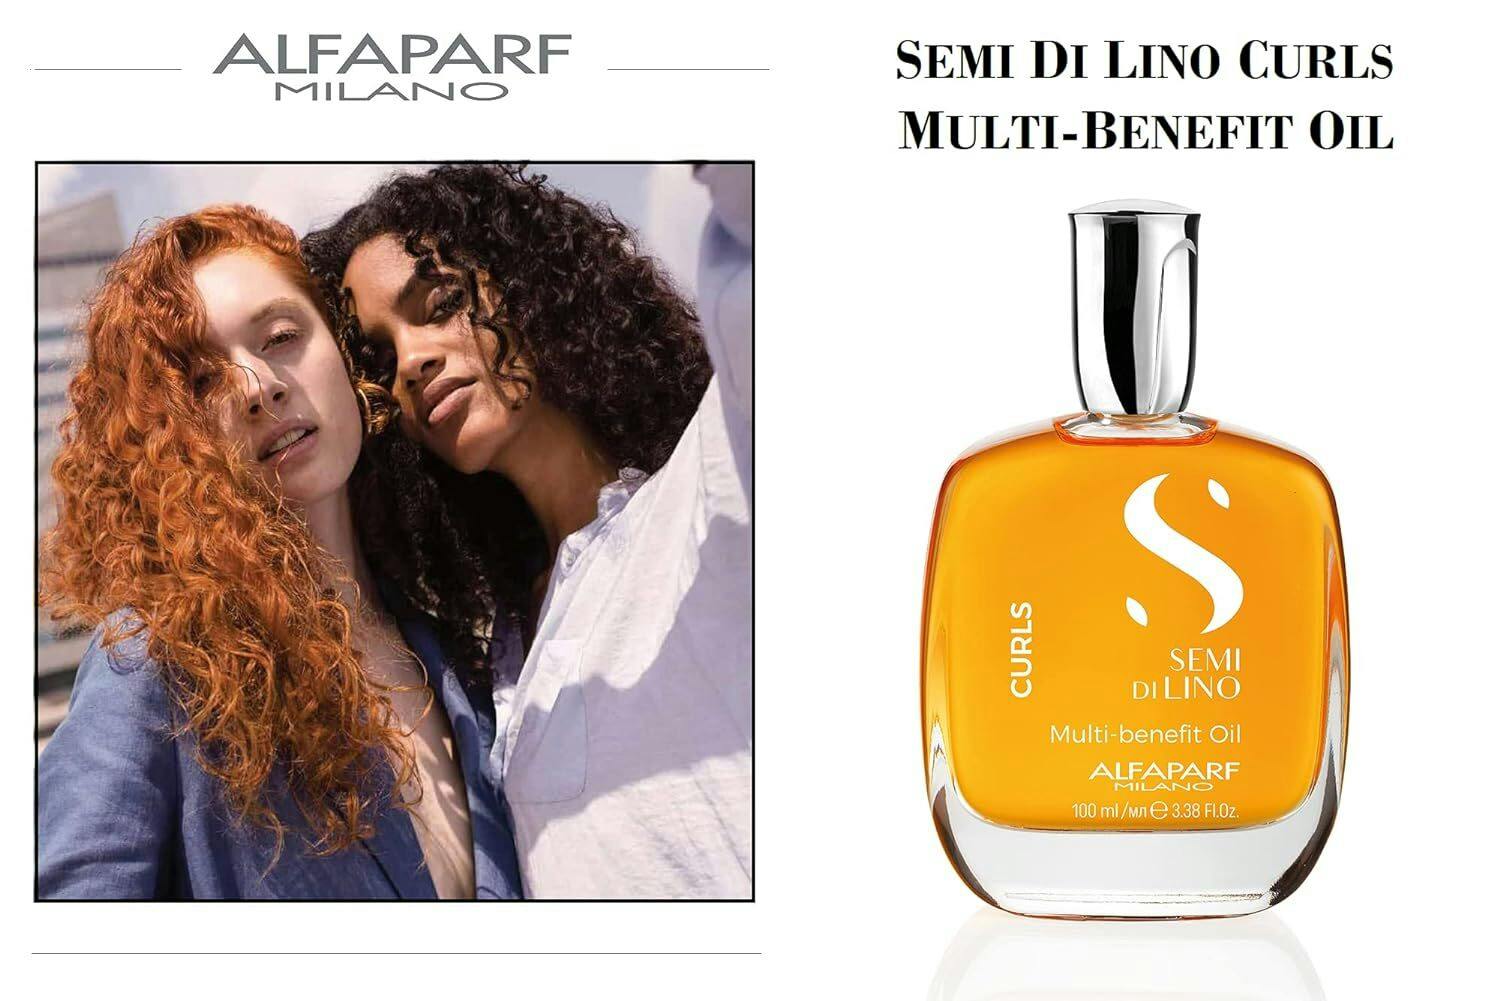 Alfaparf Milano Semi Di Lino Curls Multi-Benefit Oil 100ml